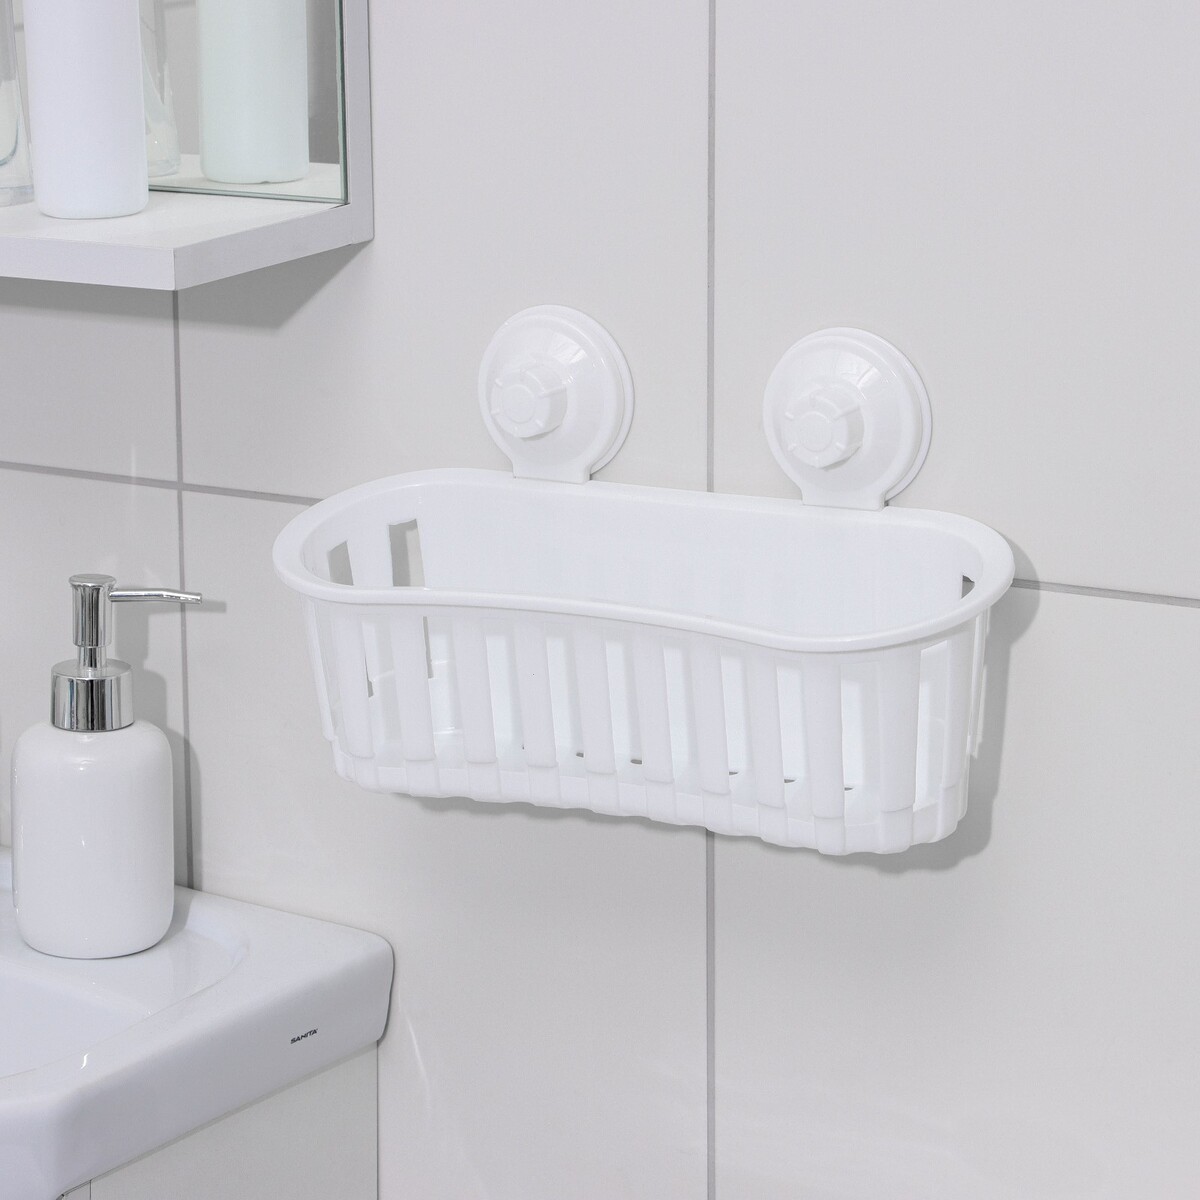 Держатель для ванных принадлежностей на вакуммных присосках, 30×11×9 см, цвет белый держатель для ванных и кухонных принадлежностей 29 5×3×5 5 см серо белый